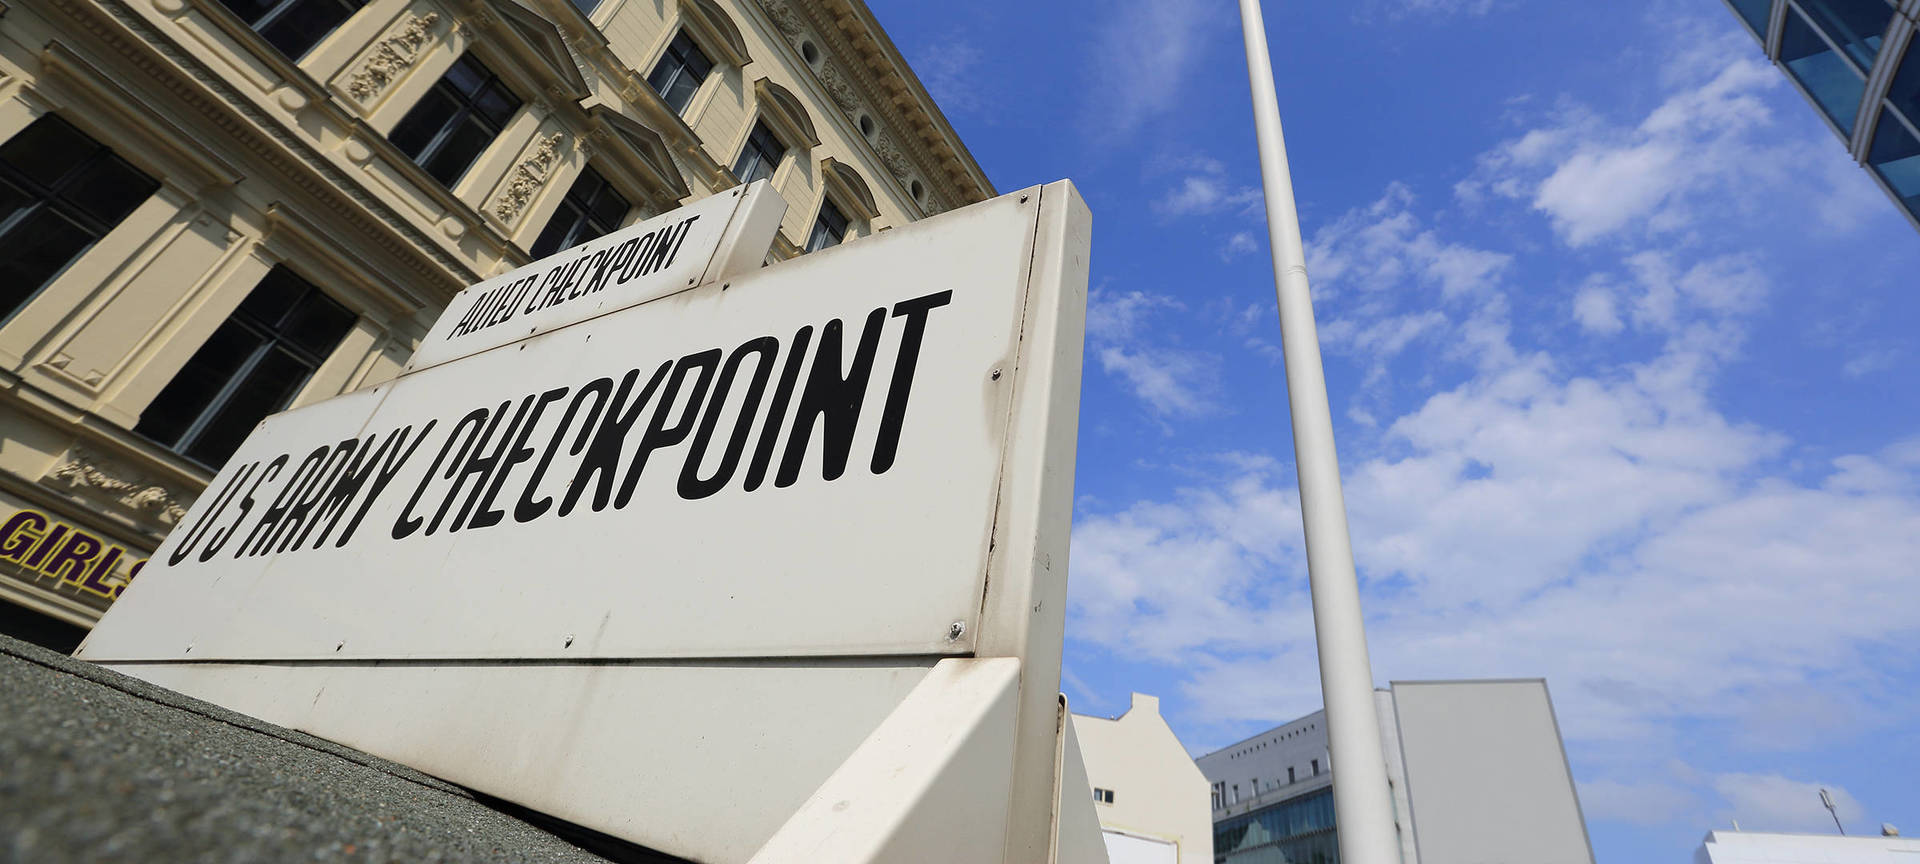 Checkpoint Charlie – Berlins berühmtester Grenzübergang